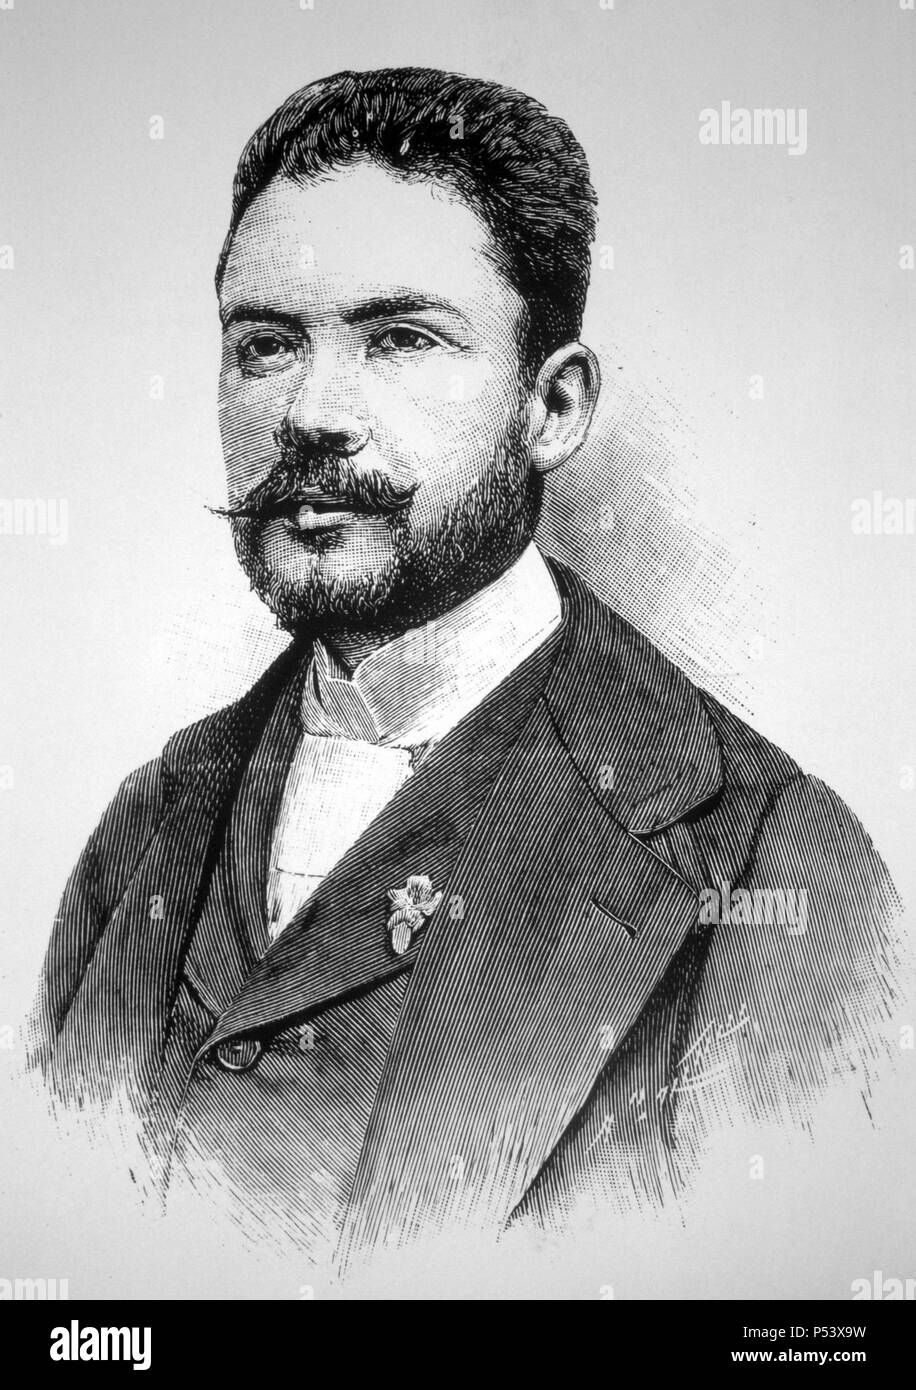 Rubén Darío (1867-1916, poeta nicaragüense. Foto del año 1892. Stock Photo